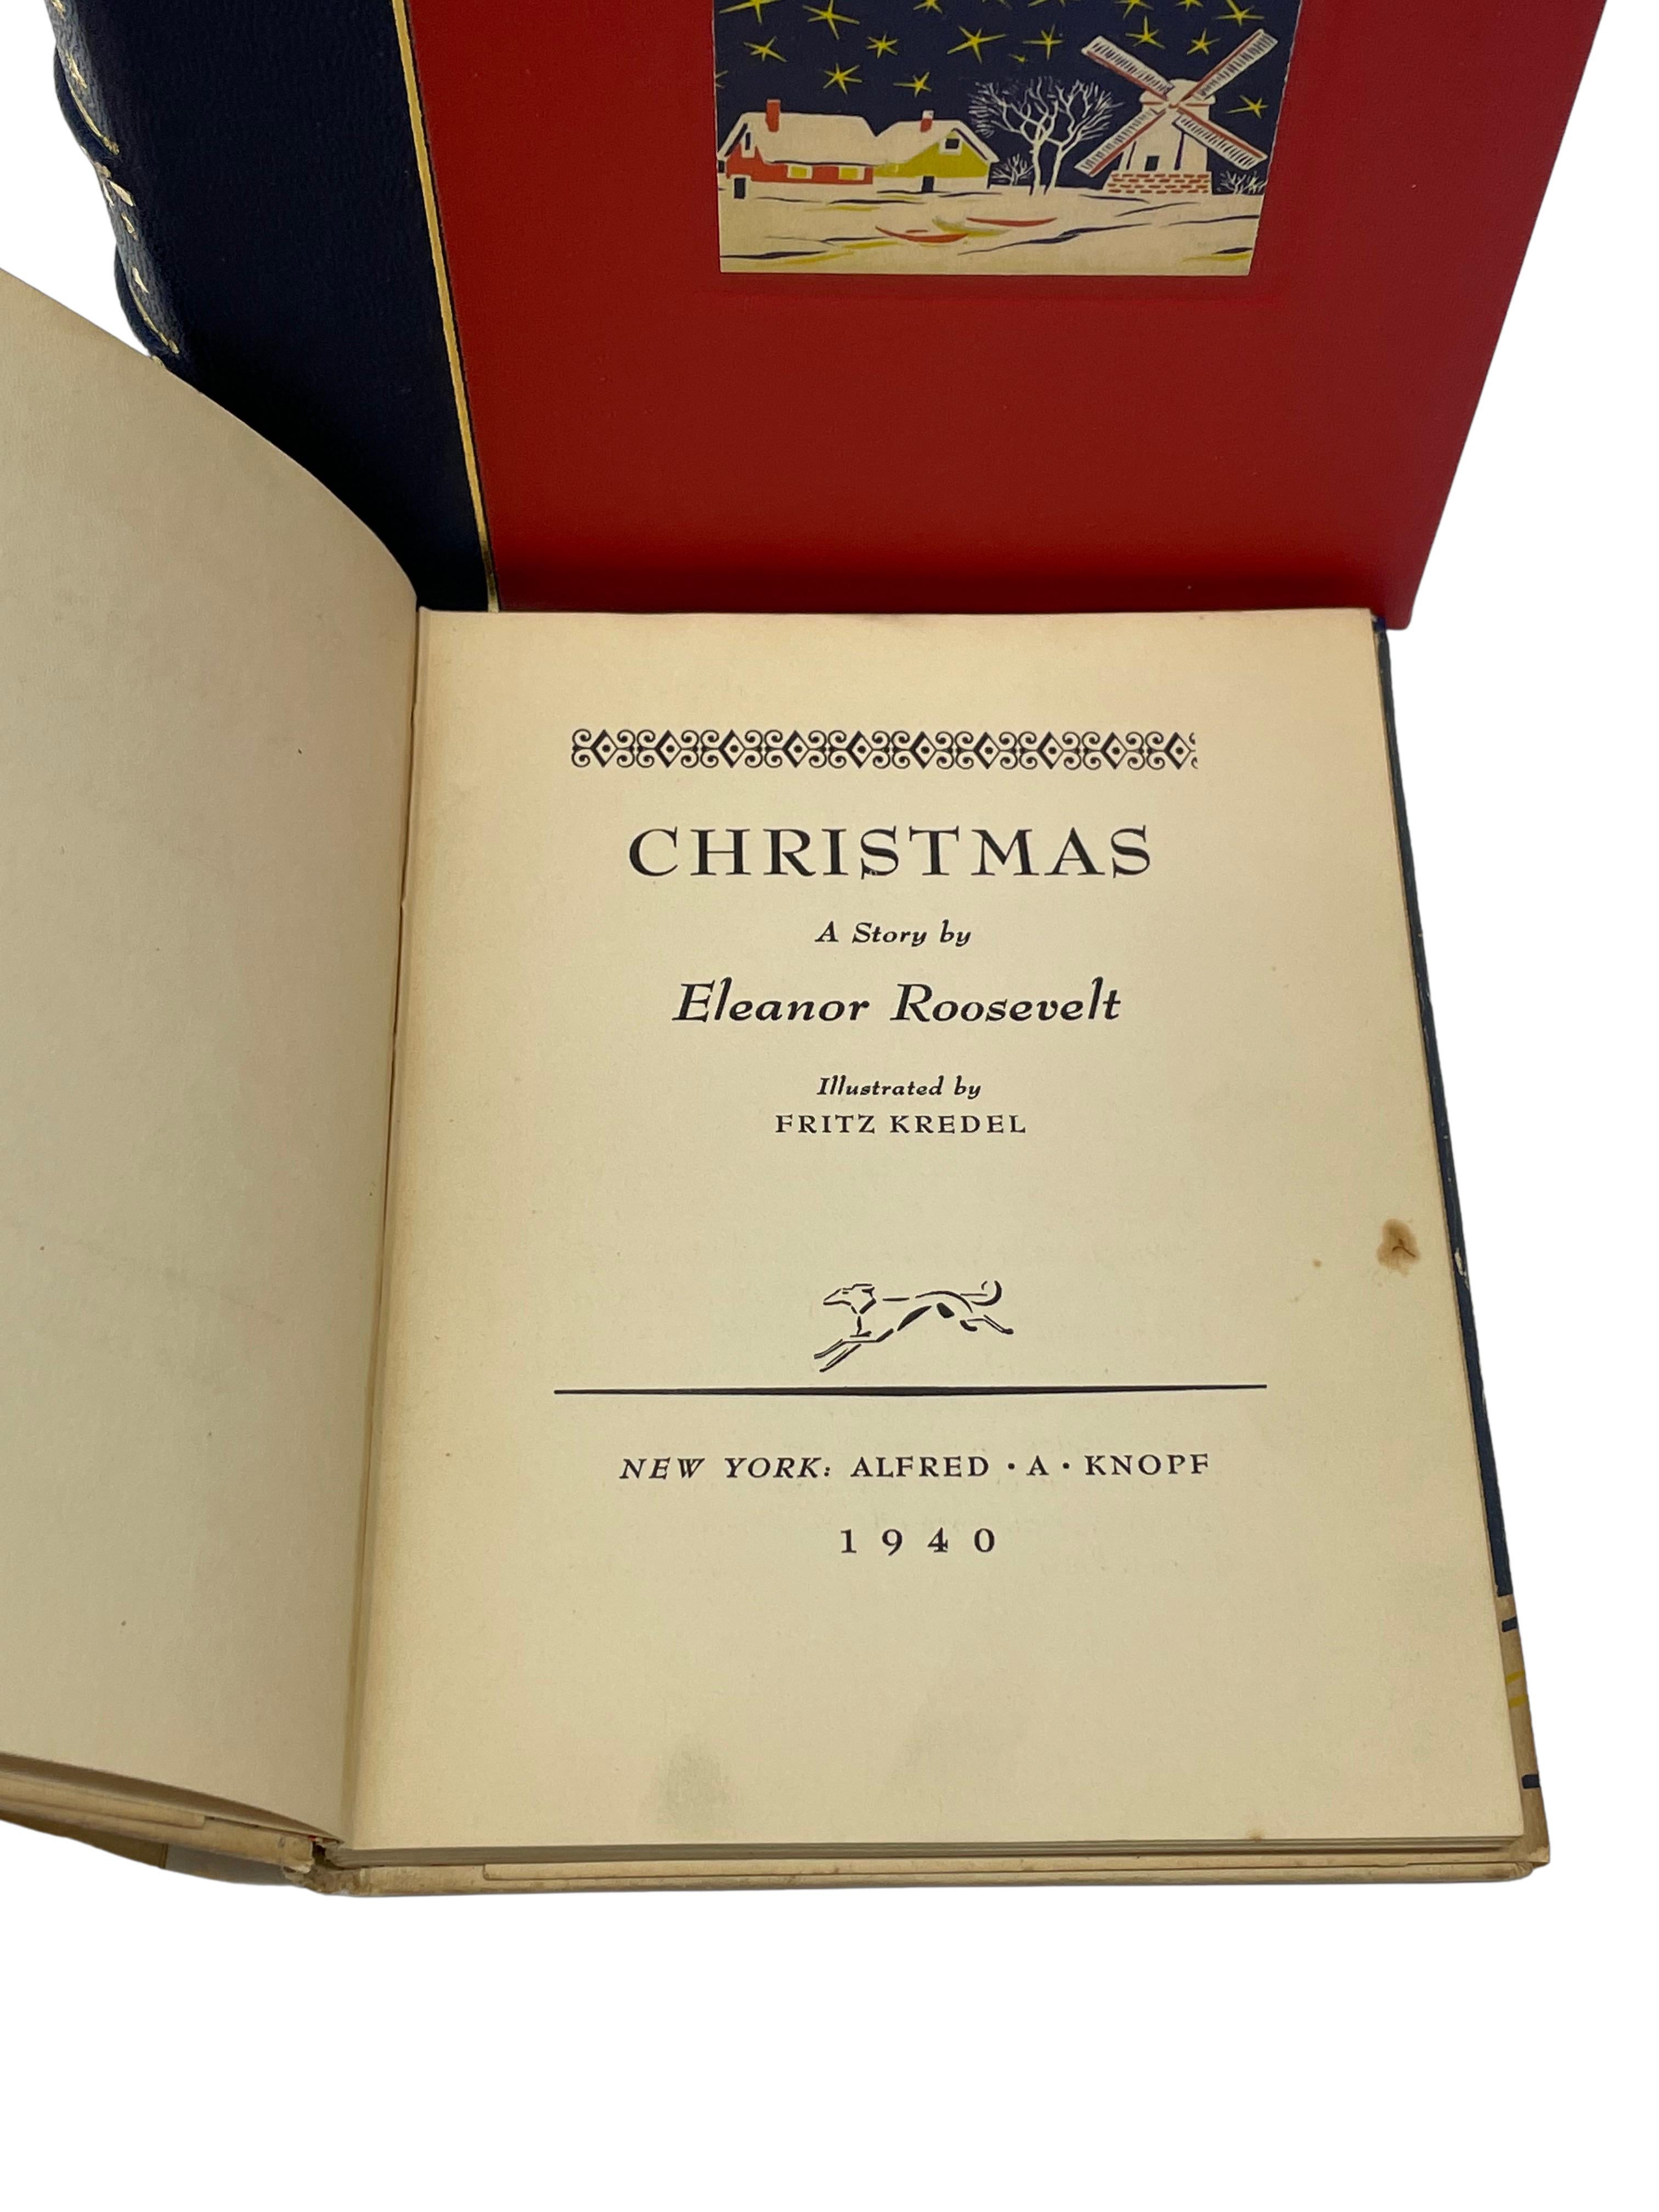 Roosevelt, Eleanor. Noël : Une histoire. New York : Alfred A. Knopf : 1940. Première édition. Signé par Roosevelt. Douze millimètres, dans sa jaquette d'origine colorée. Présenté dans une pochette d'archivage personnalisée. 

Il s'agit d'une